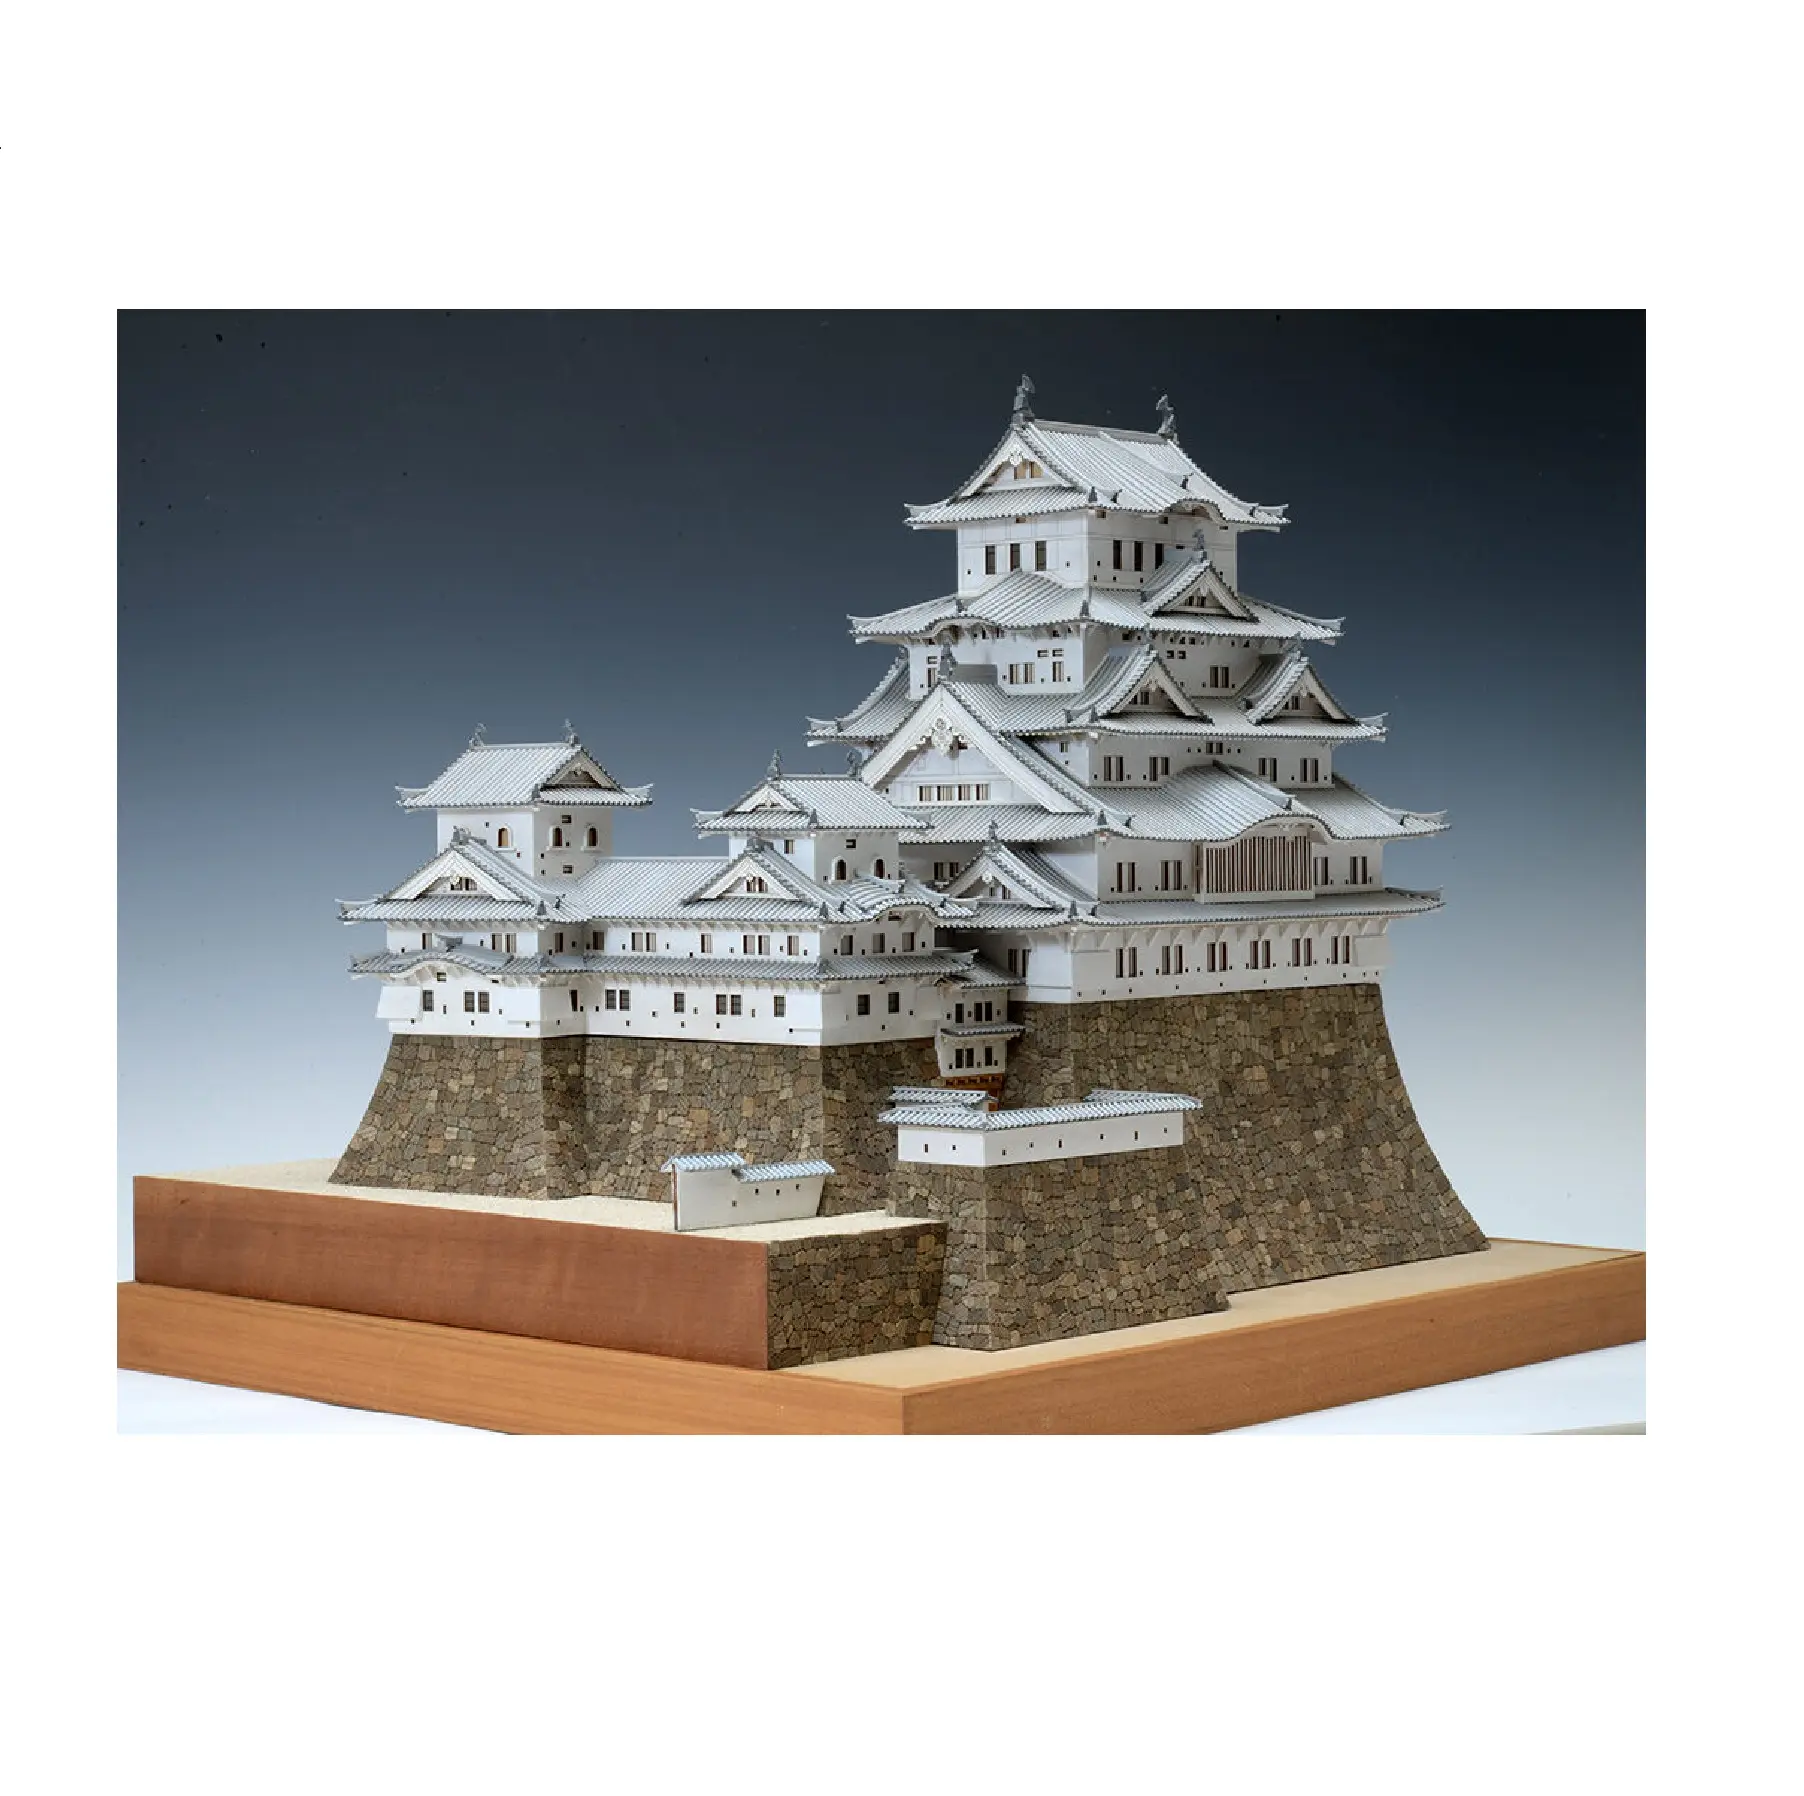 Paling Laris templat Model produk Kastil kayu pribadi anak-anak